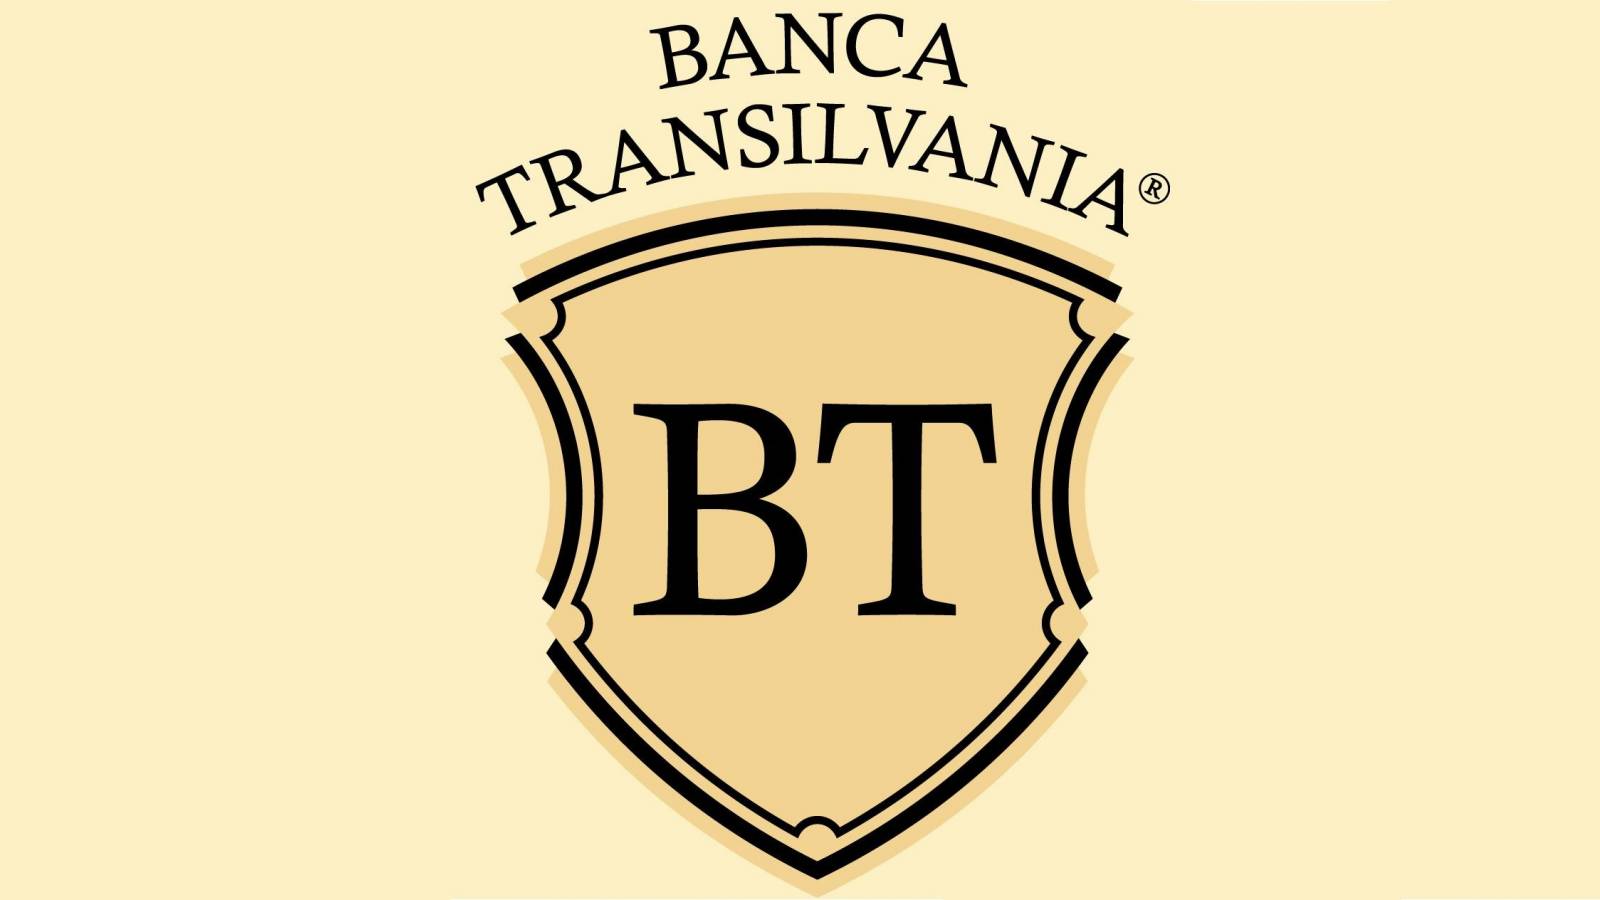 BANCA Transilvania MUSI znać oficjalny komunikat wysyłany do klientów